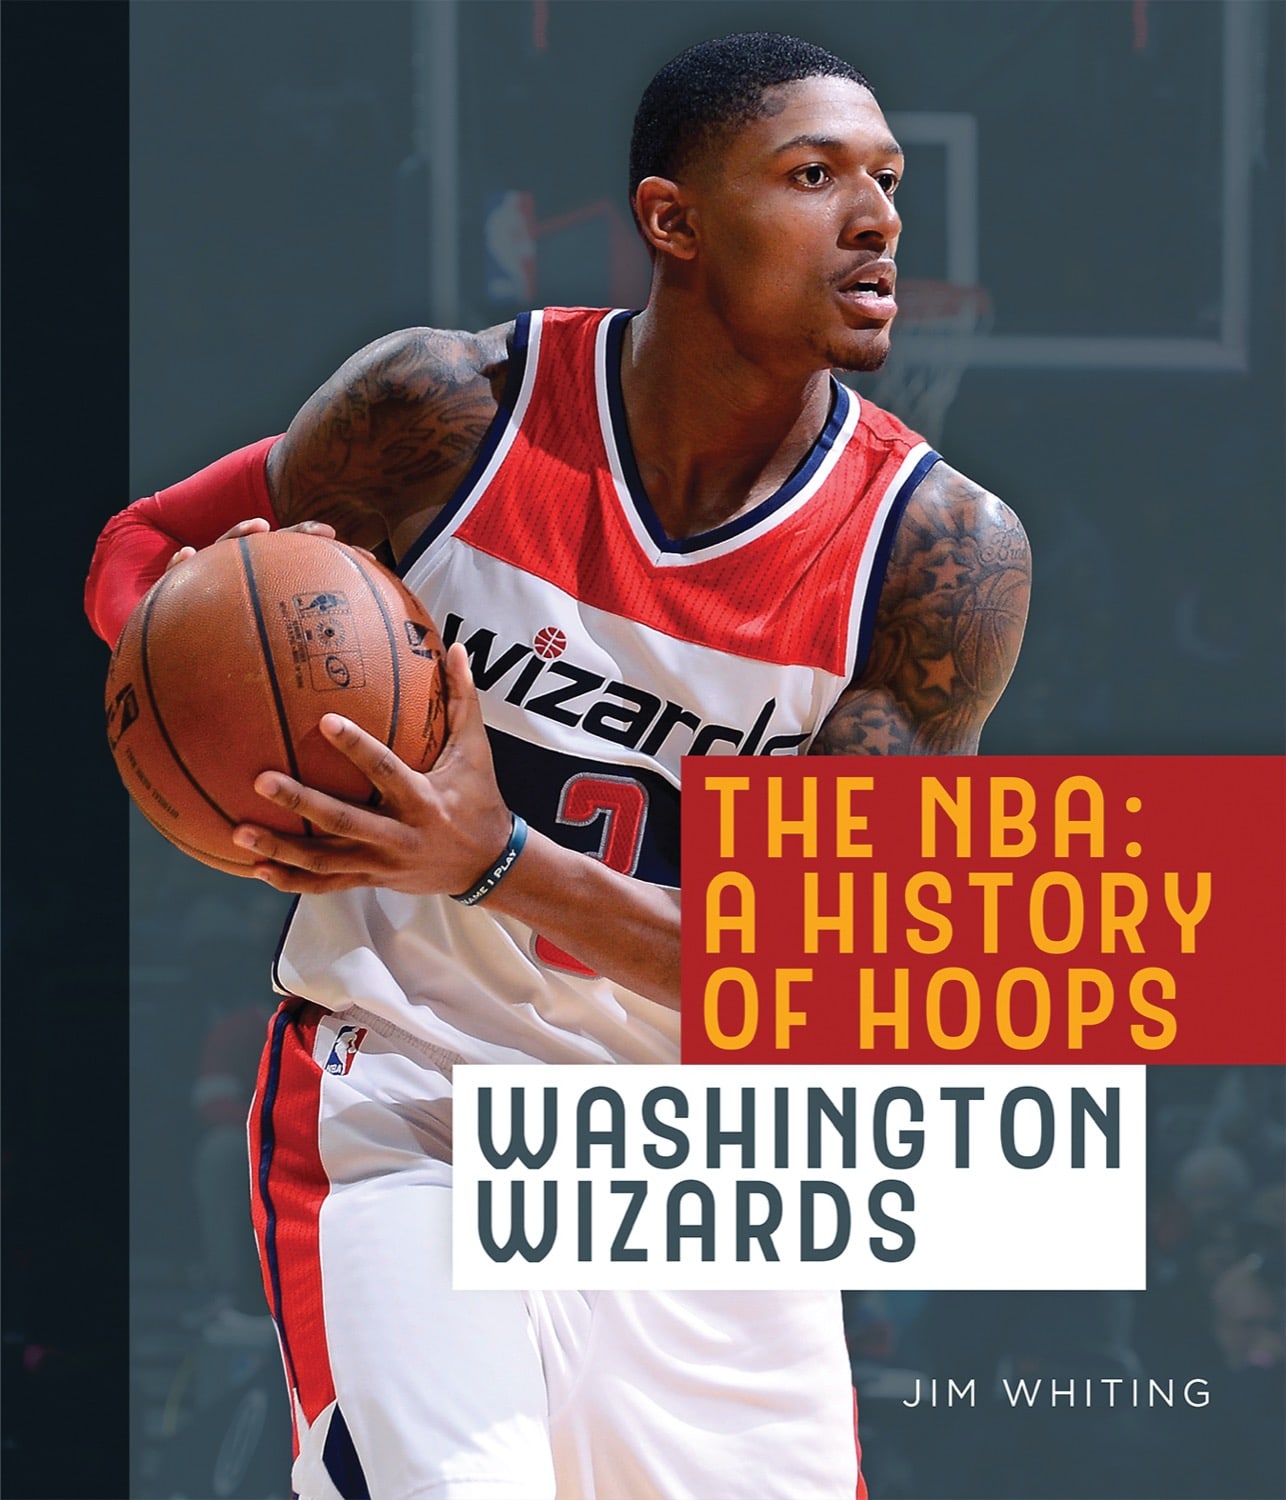 Washington Wizards history